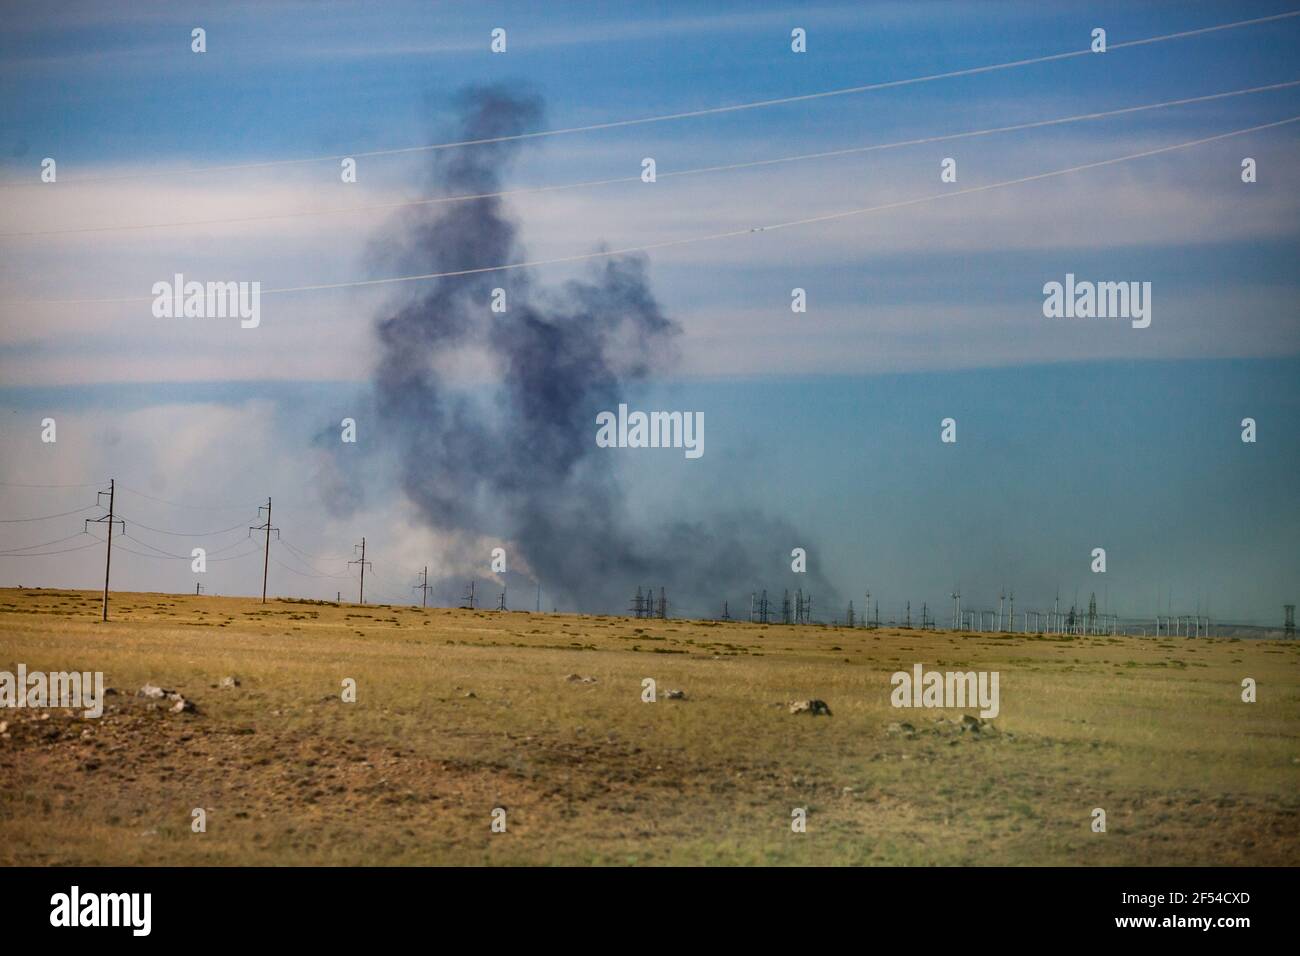 Vue panoramique sur la steppe et l'explosion. Carrière d'extraction de charbon au Kazakhstan. Fumée noire sur fond bleu ciel. Banque D'Images